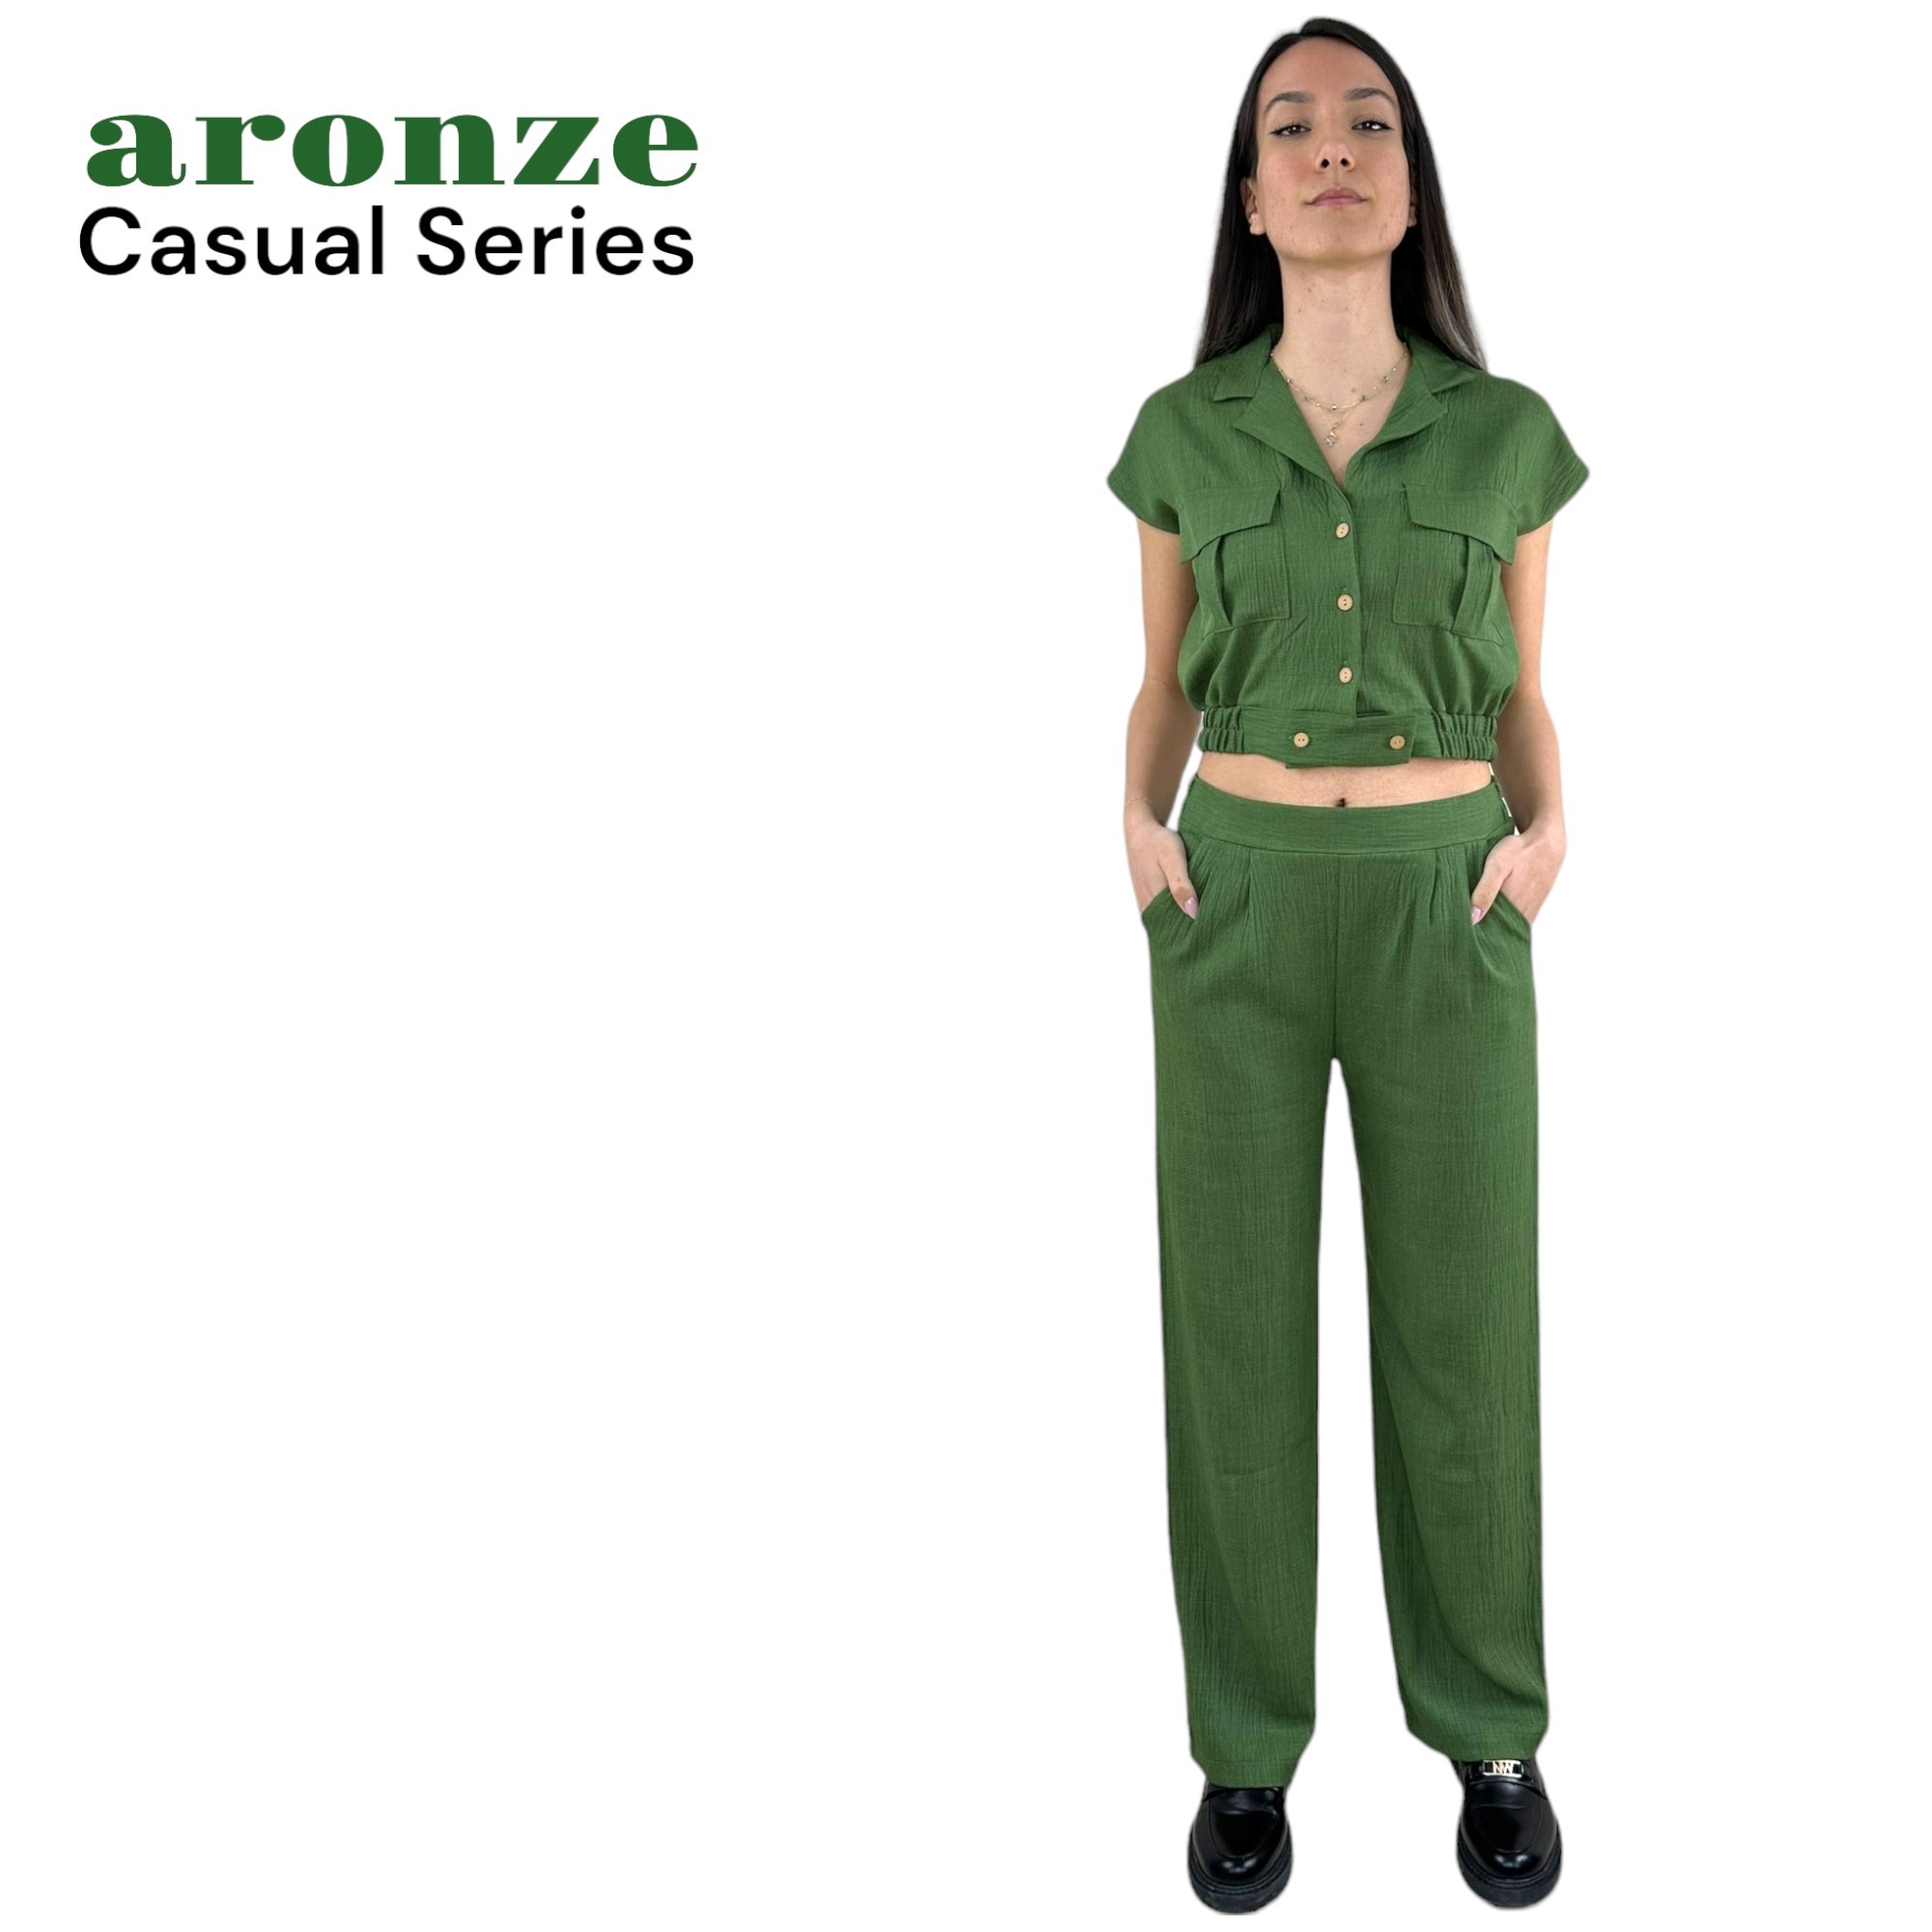 Aronze Casual Series %100 Organik Türk Pamuğu Crop Pantolon Yeşil Renk Takım